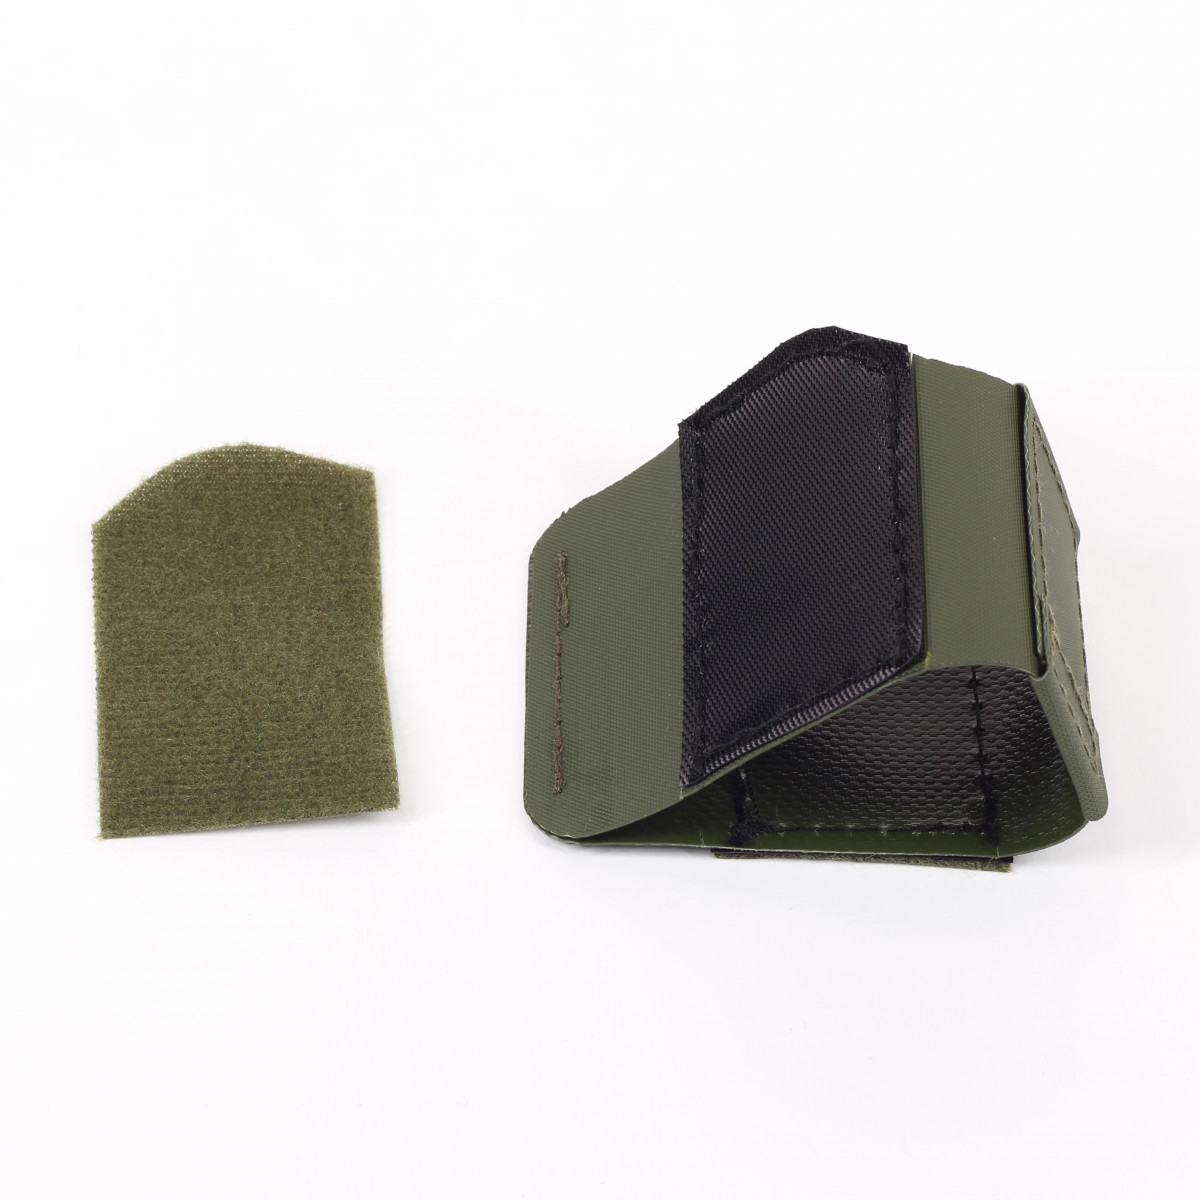 Hüfttasche subcompact Grau – Subcompact Pistolenaufnahme mit beidseitiger Klettflächen für flexibles anbringen